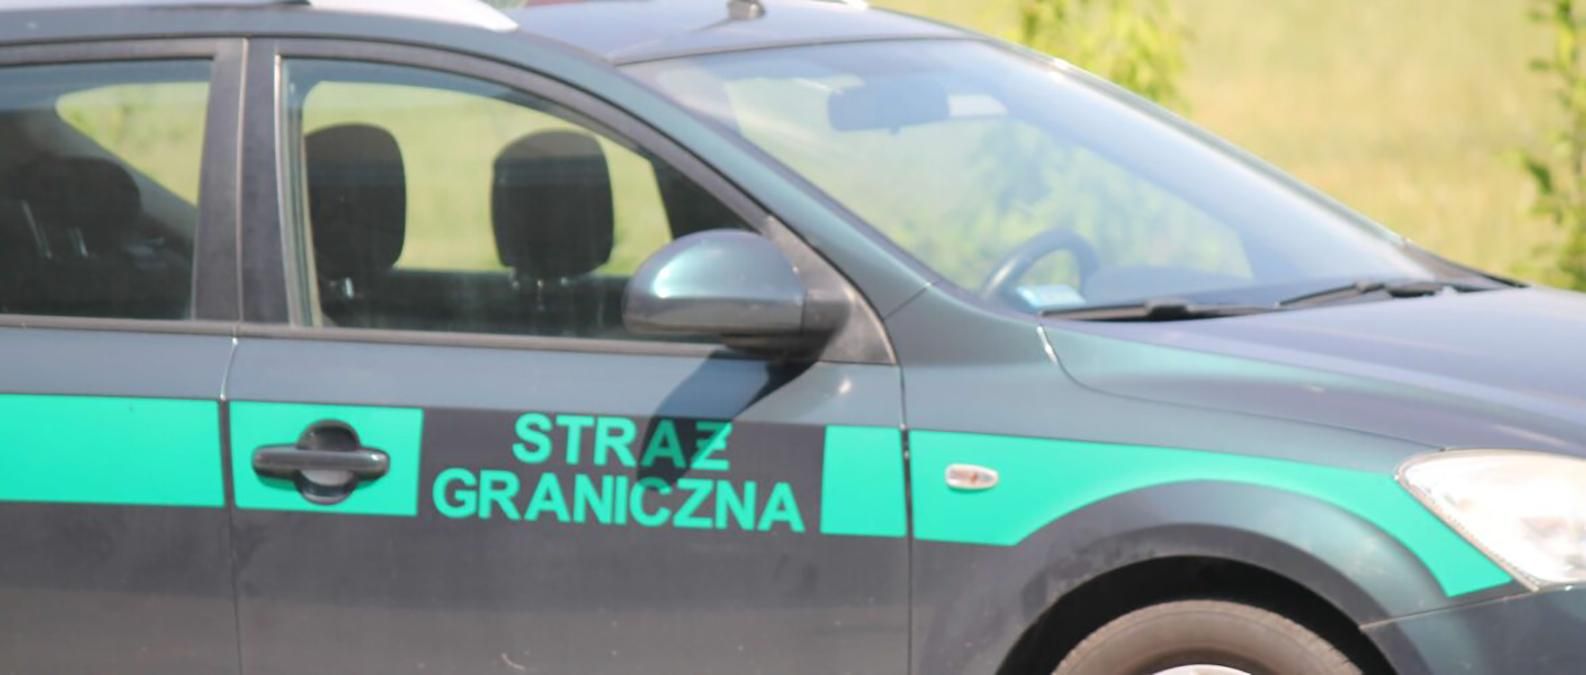 В Польше задержали преступную группу, которая похищала автомобили